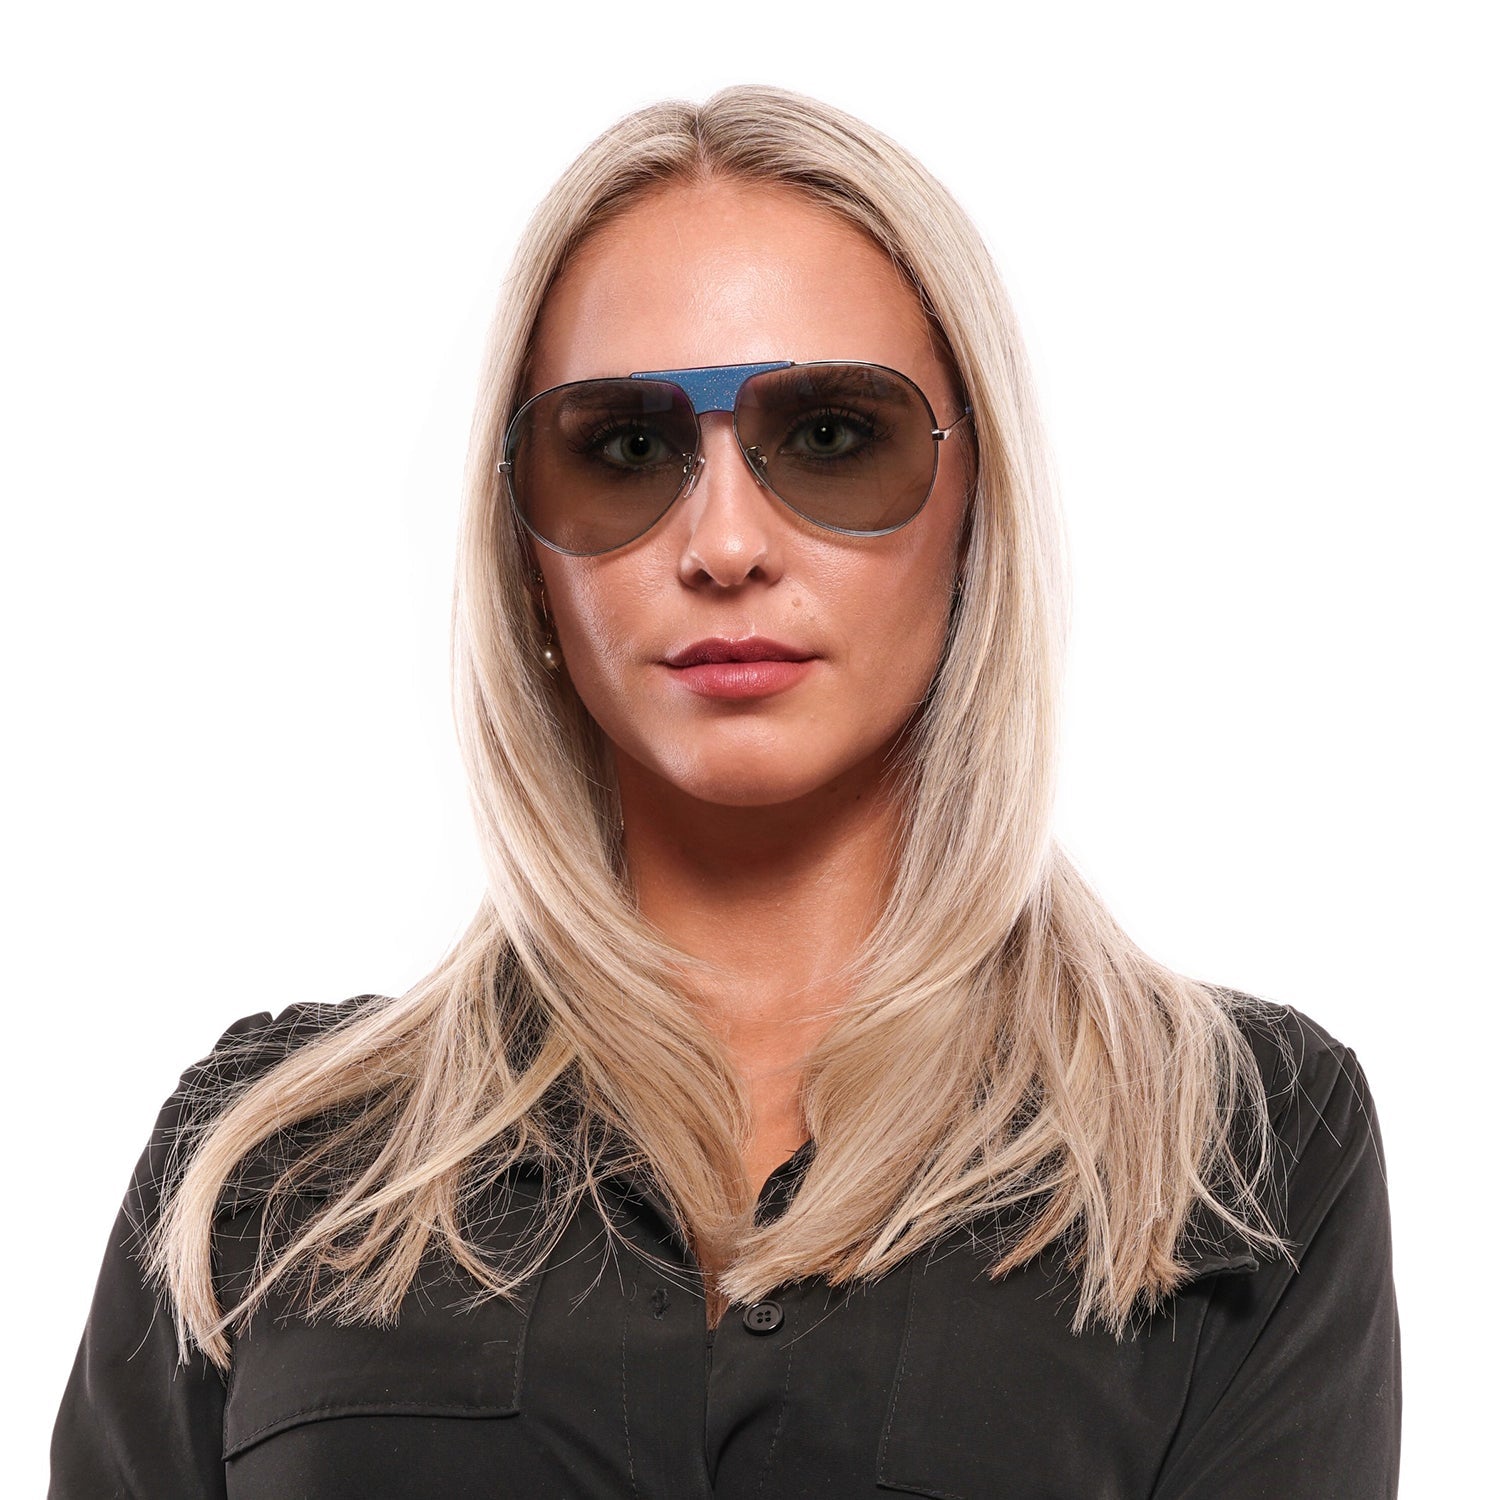 Police Blue Sunglasses for Woman - Fizigo